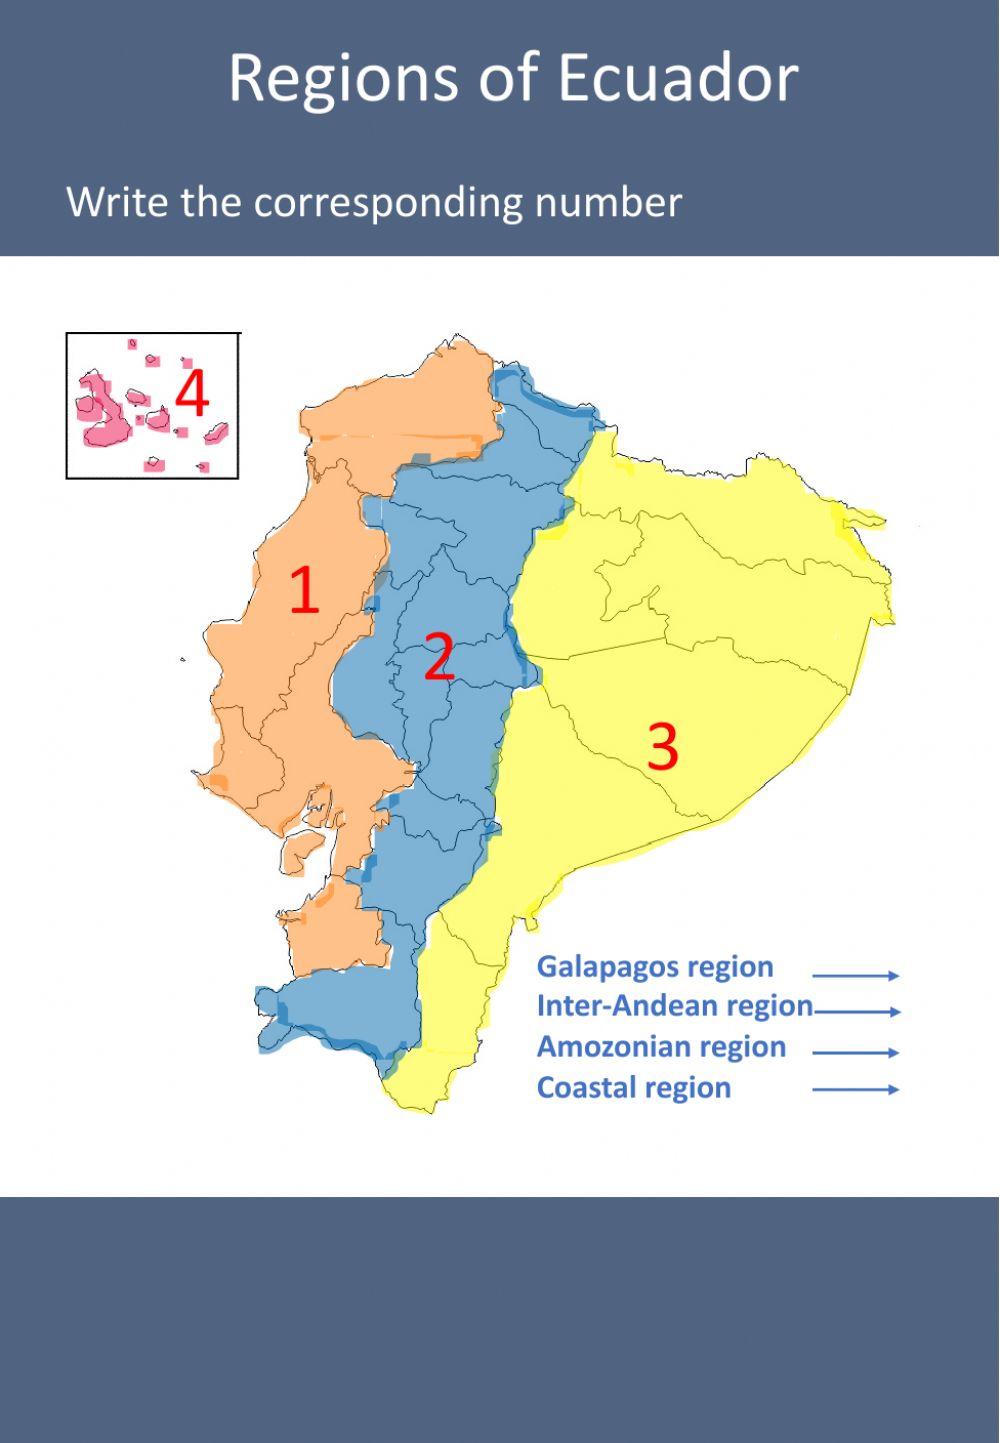 Regions of Ecuador - Provinces - Capitals